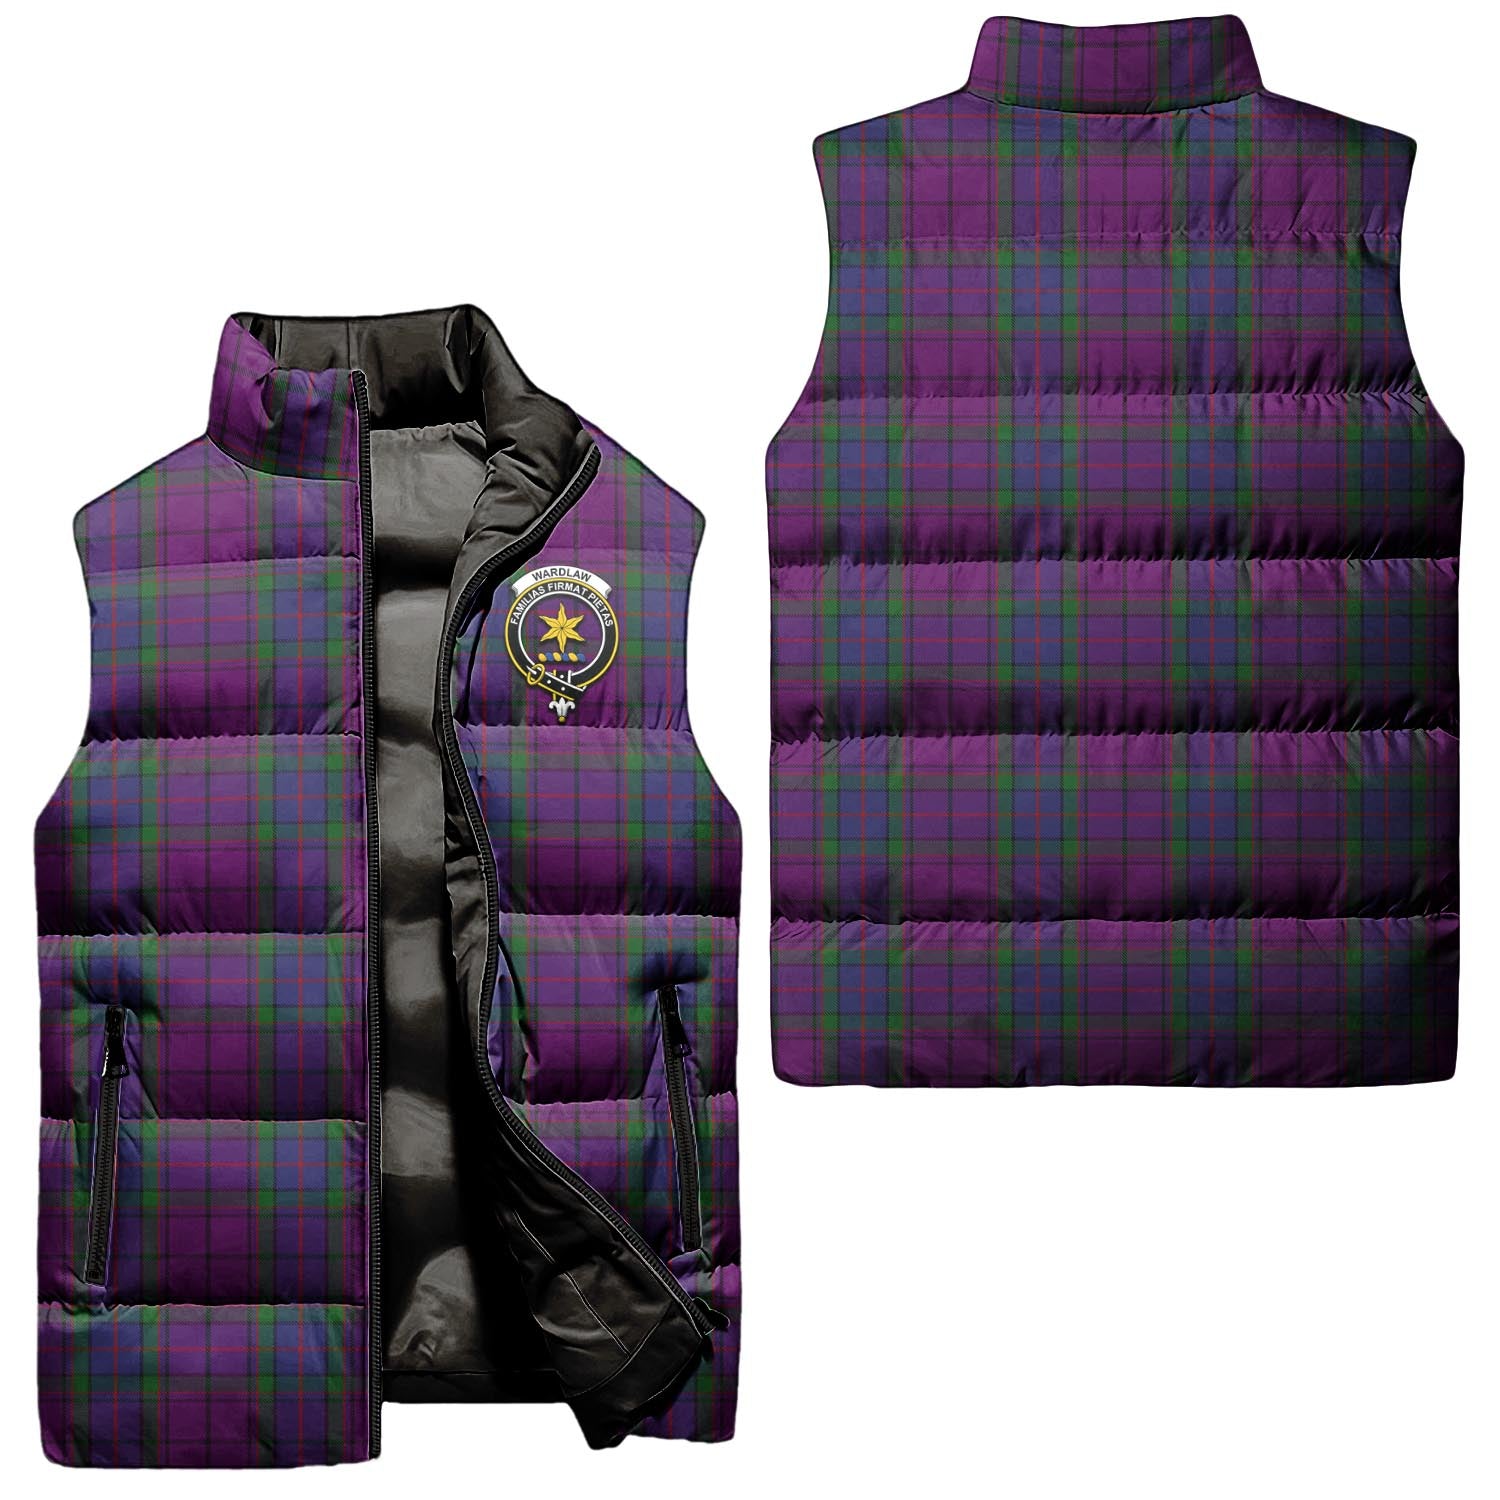 Wardlaw Tartan Sleeveless Puffer Jacket with Family Crest Unisex - Tartanvibesclothing